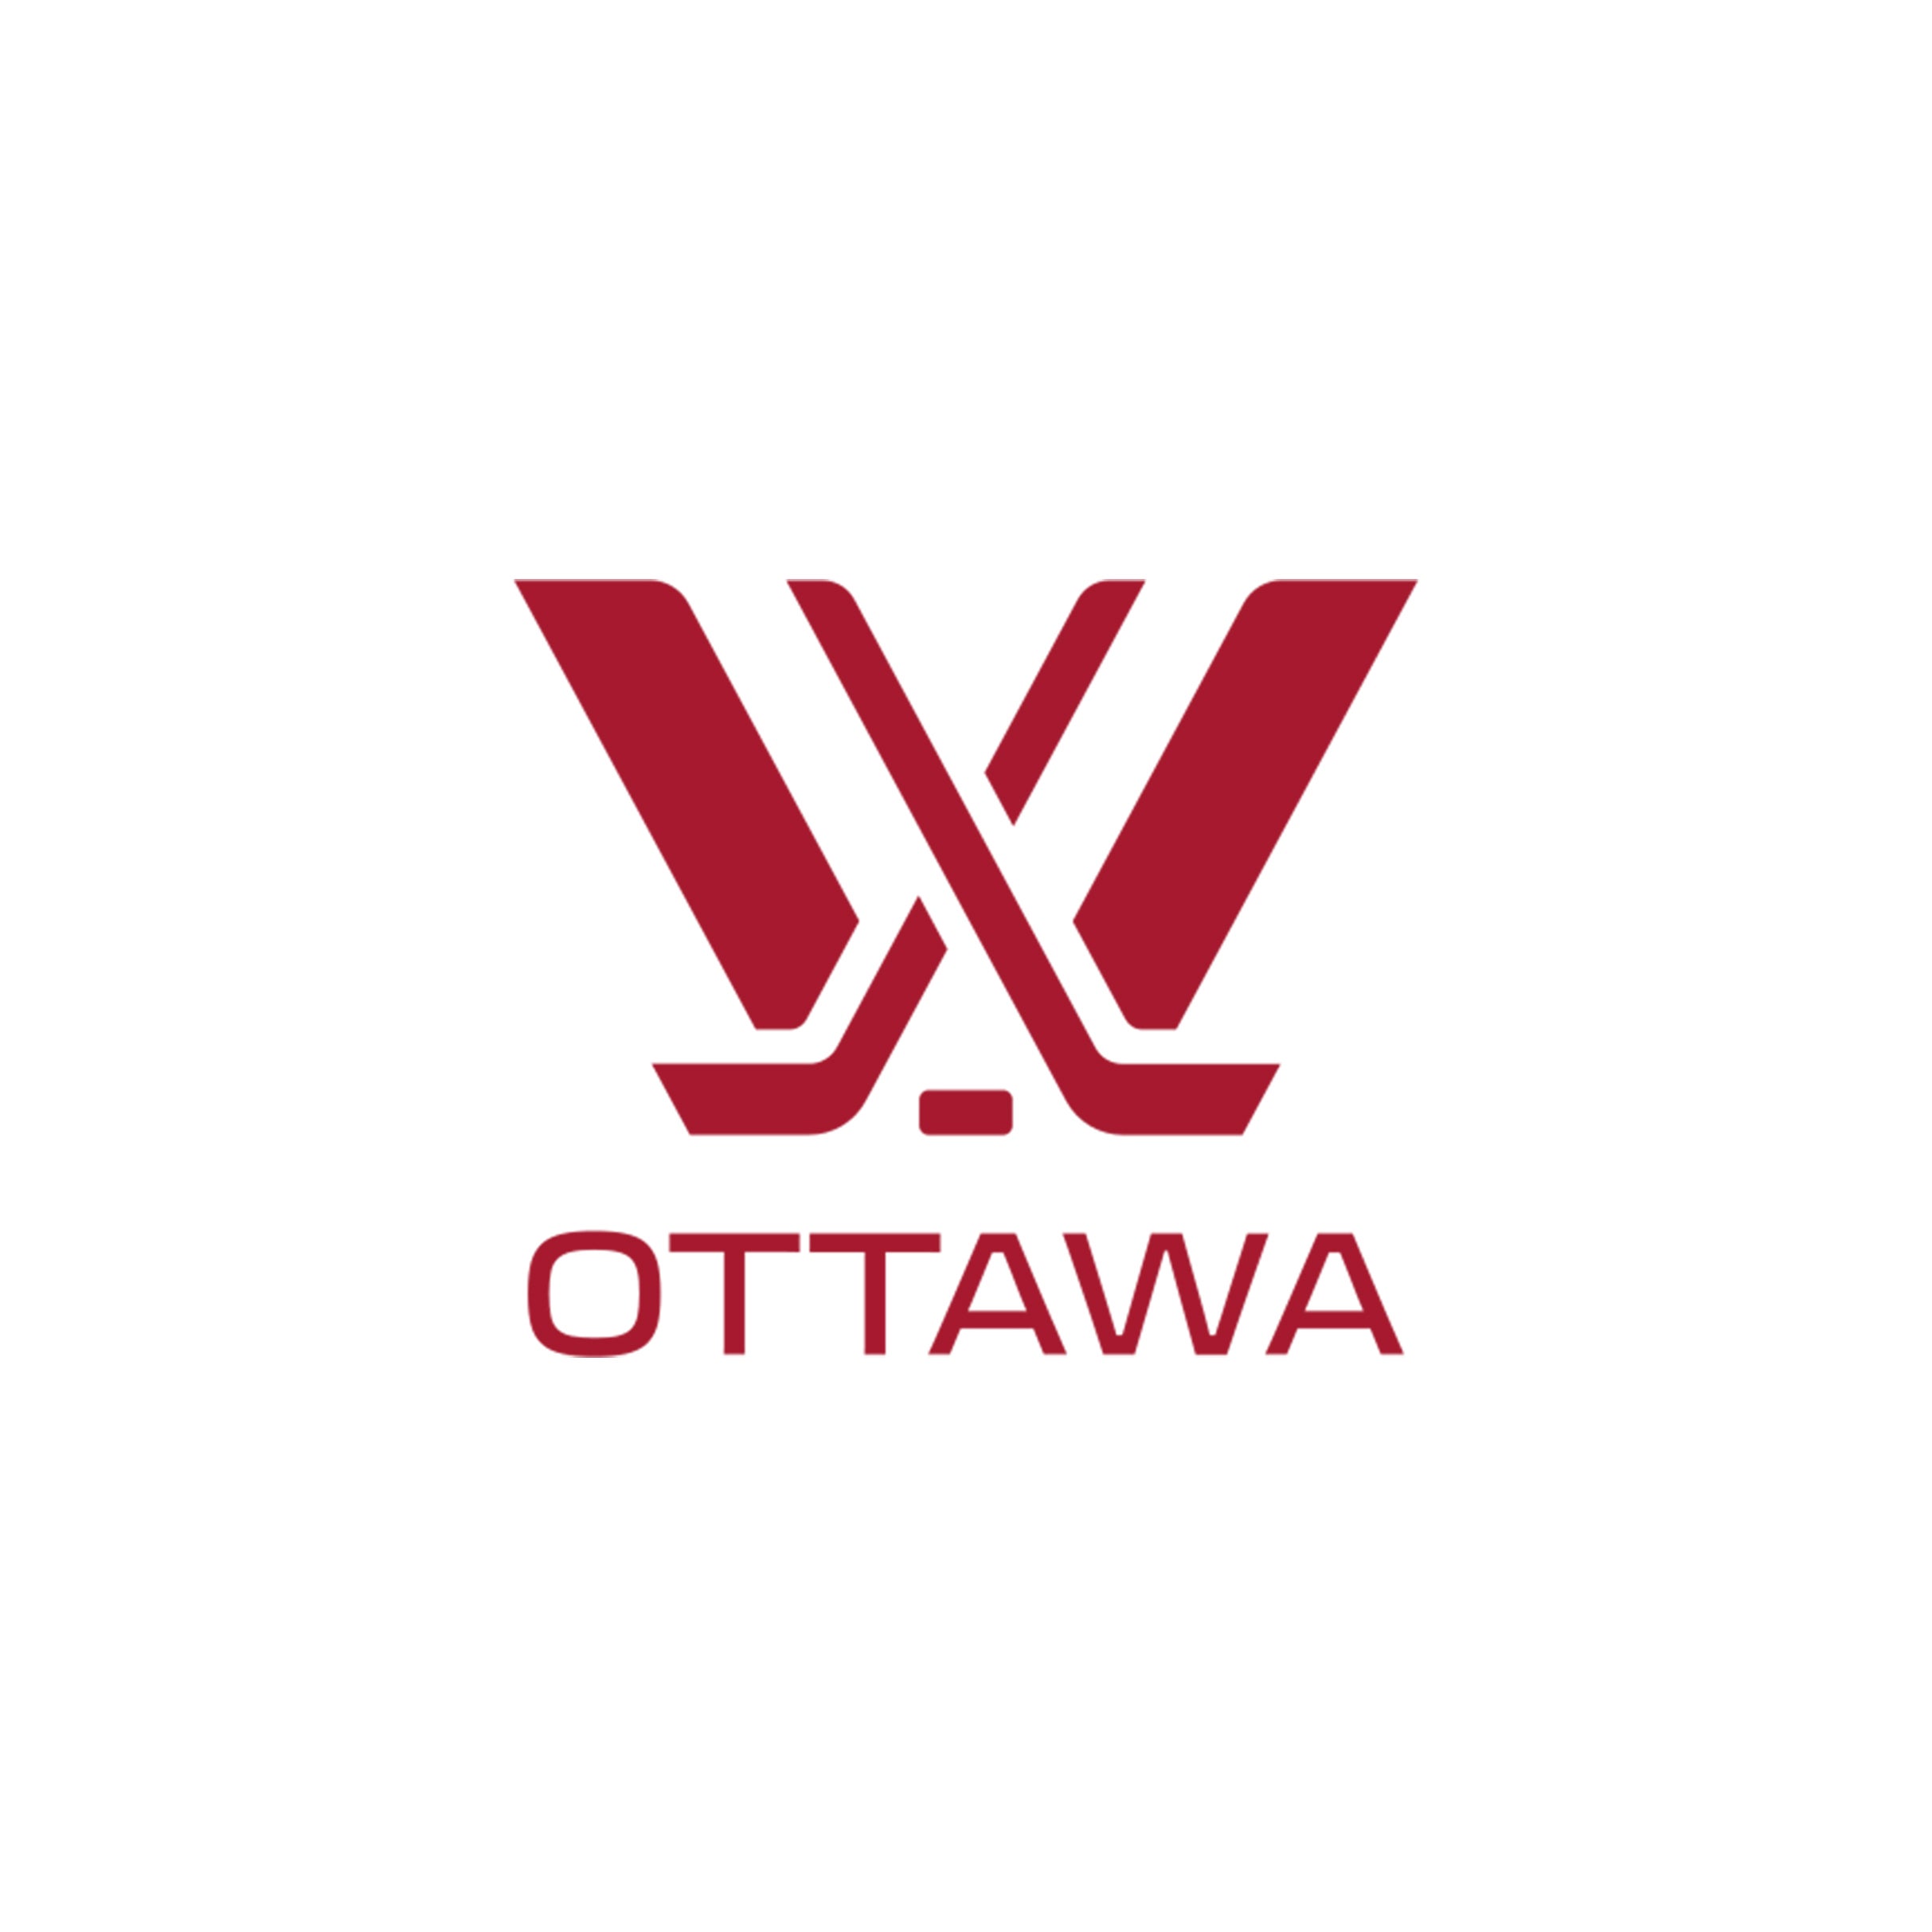 PWHL Ottawa vs. PWHL Minnesota in Ottawa promo photo for Exclusive presale offer code